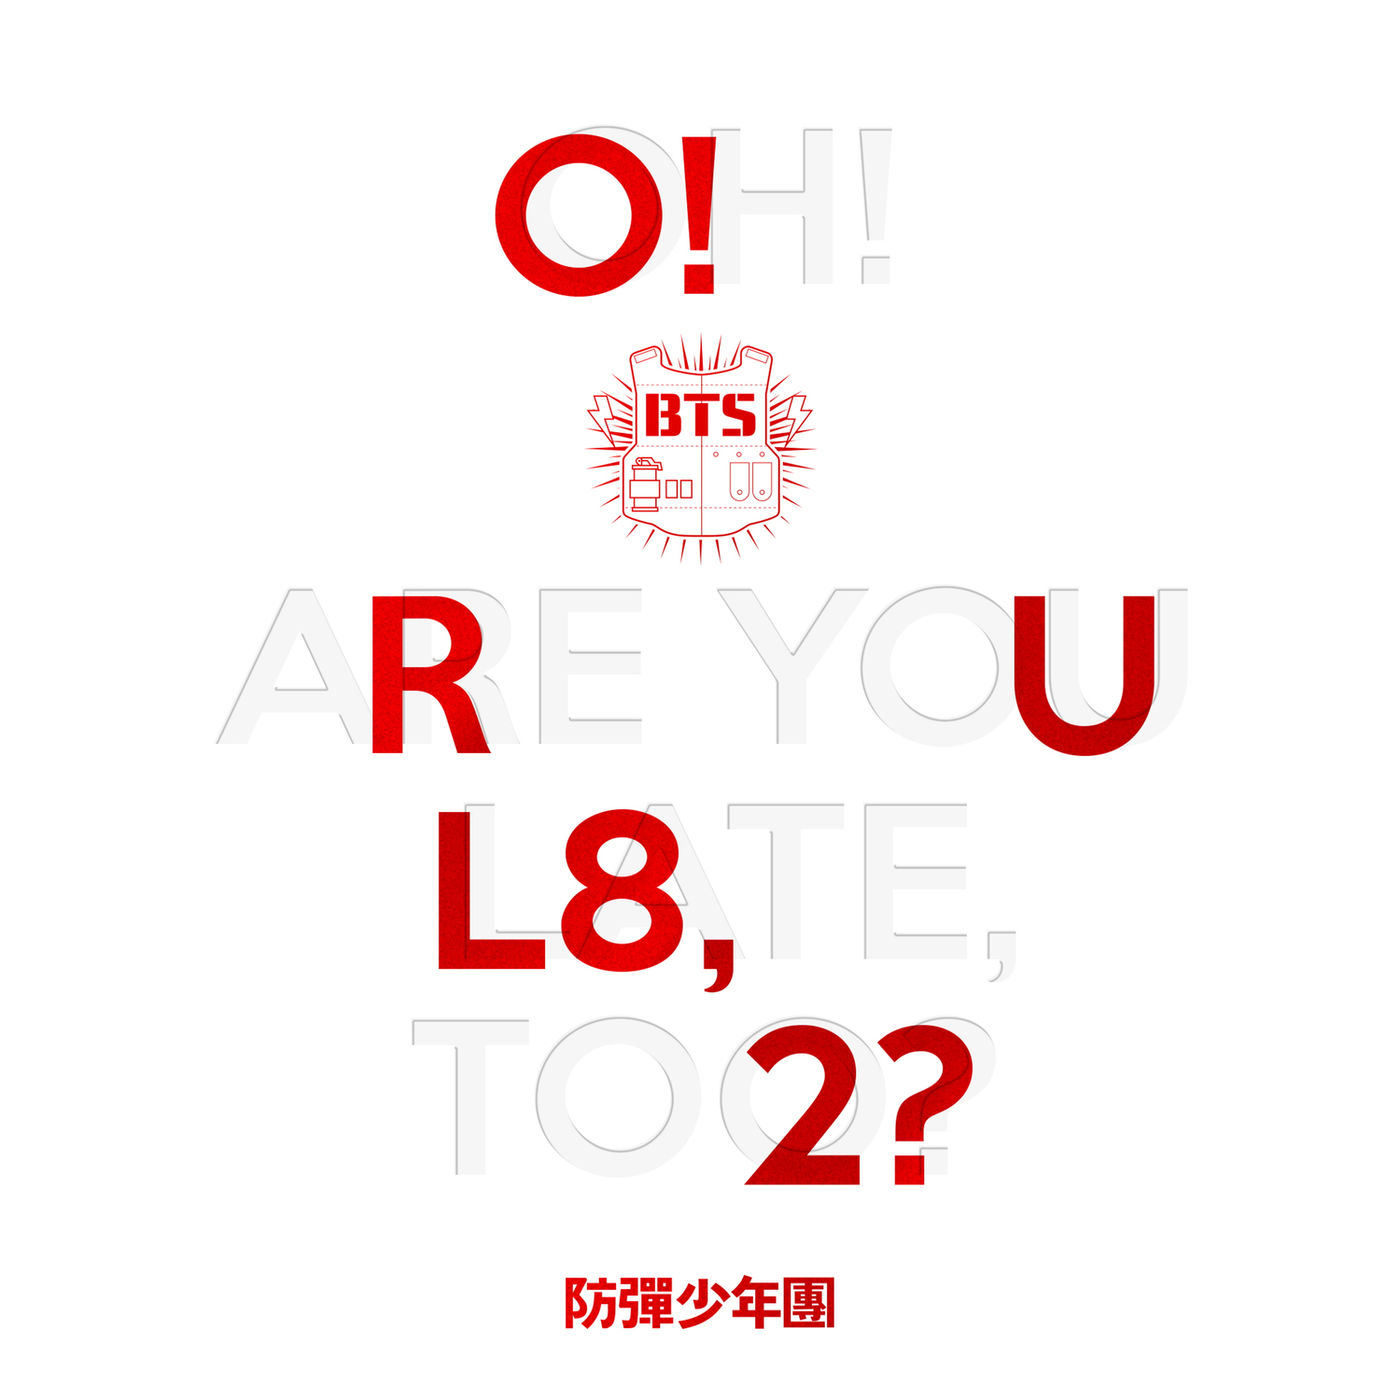 دانلود آلبوم BTS به نام O!RUL8,2? با کیفیت FLAC 🔥